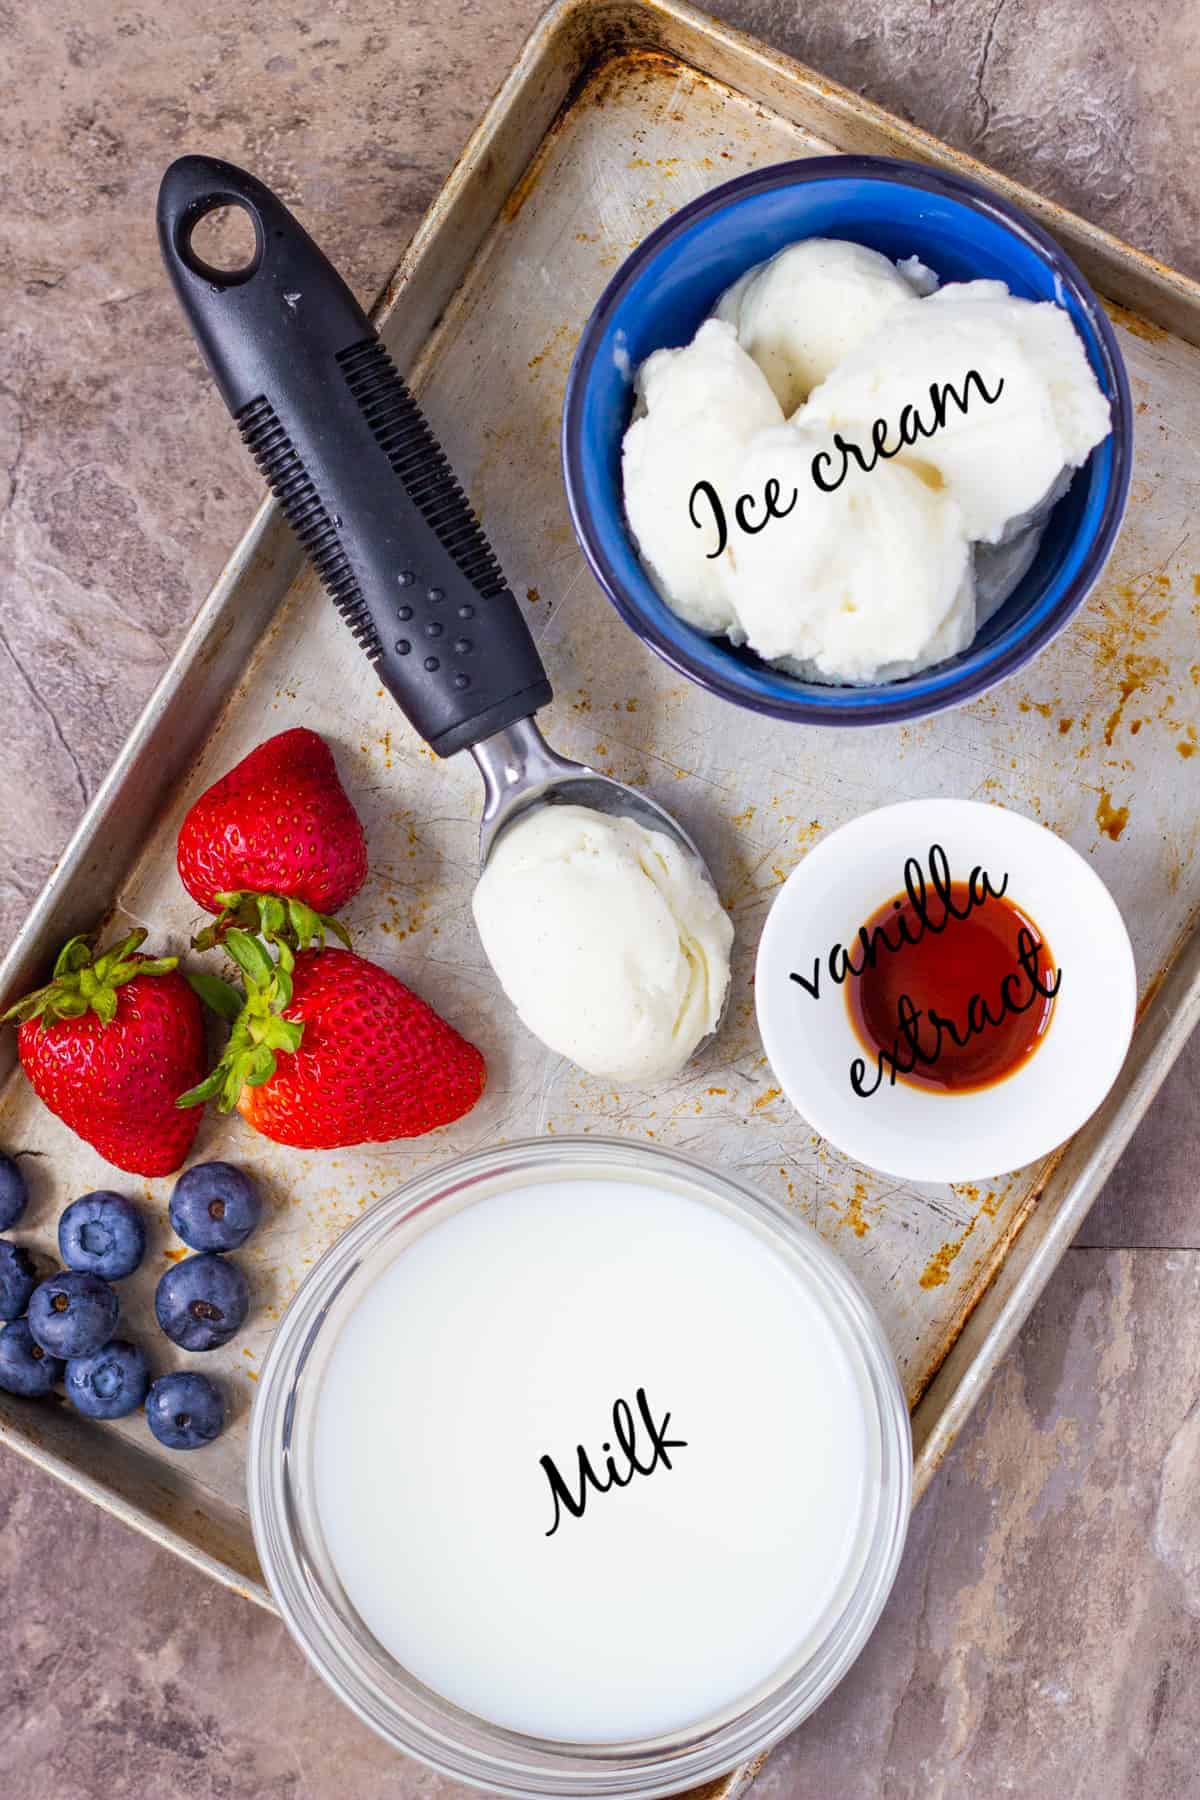 For this milkshake recipe you need milk, ice cream, vanilla extract and berries